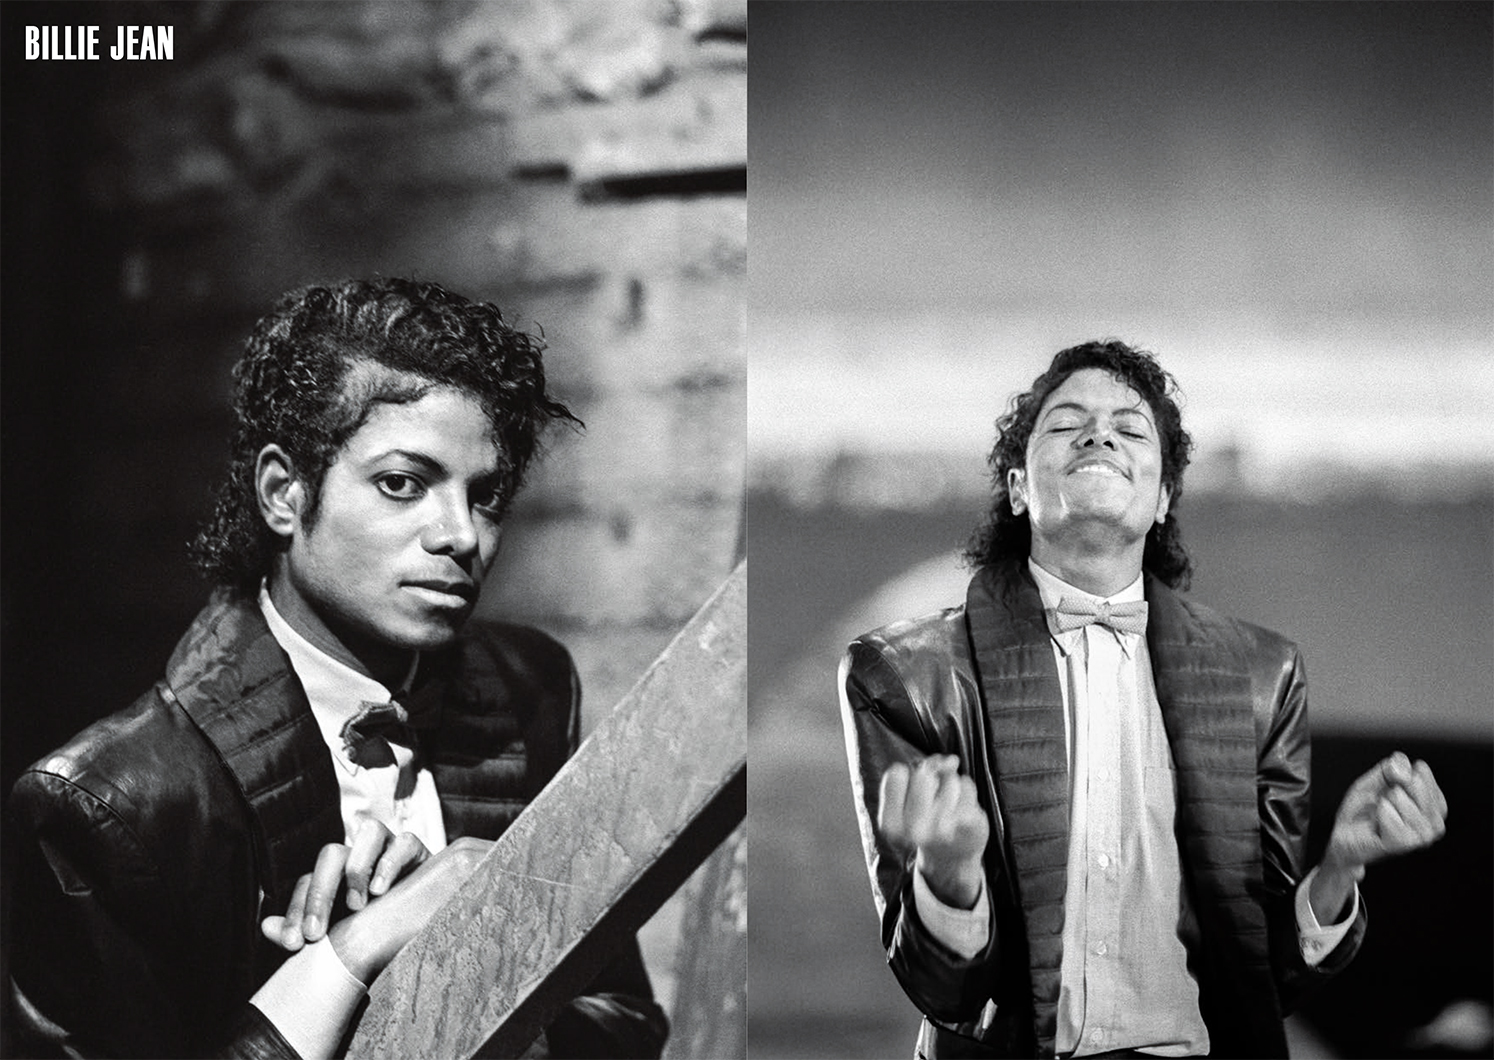 写真集『MJ ステージ・オブ・マイケル・ジャクソン』 | 株式会社クレヴィス